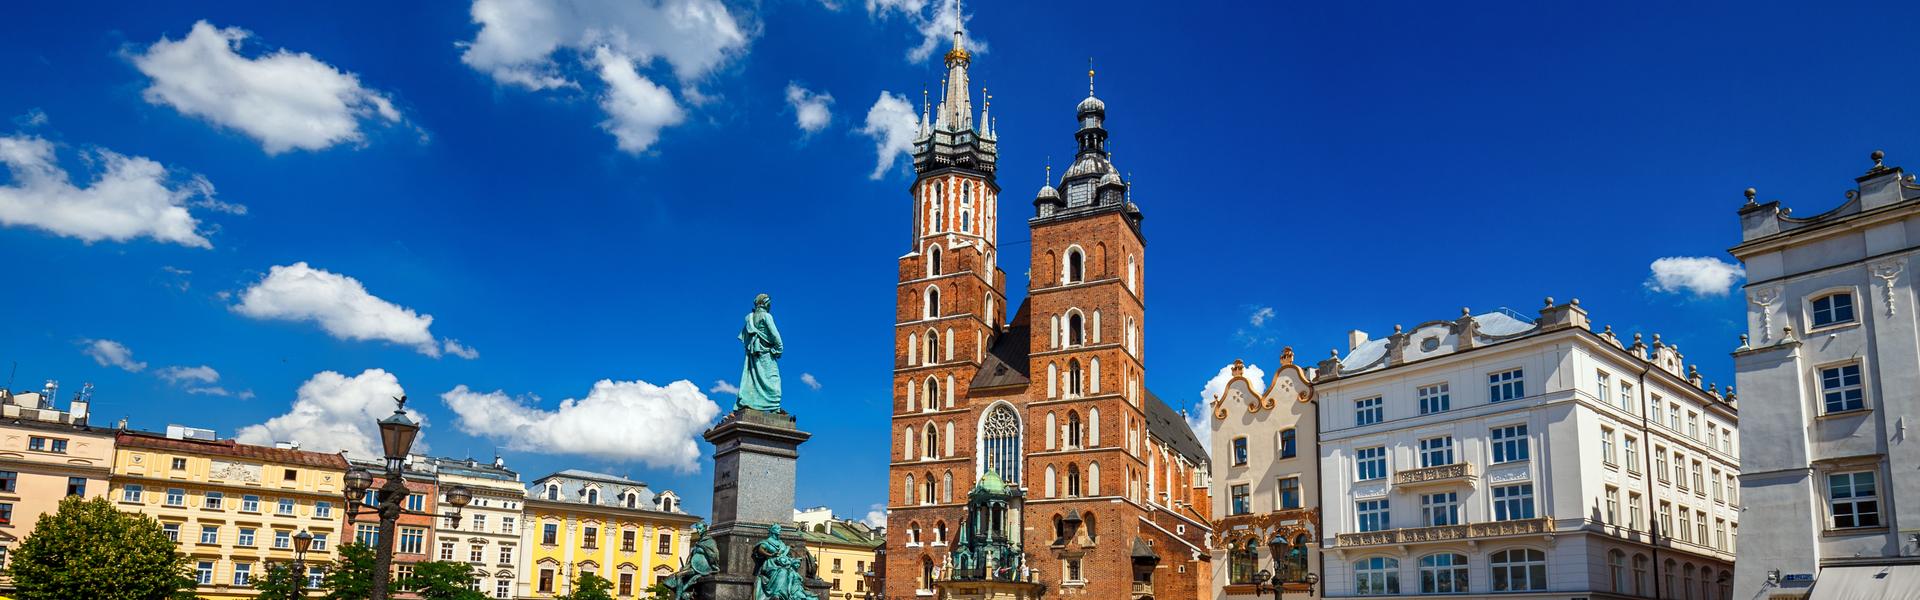 Image: Kościół Mariacki – jeden z najwspanialszych zabytków Krakowa i przykład sztuki gotyckiej. 800 lat historii